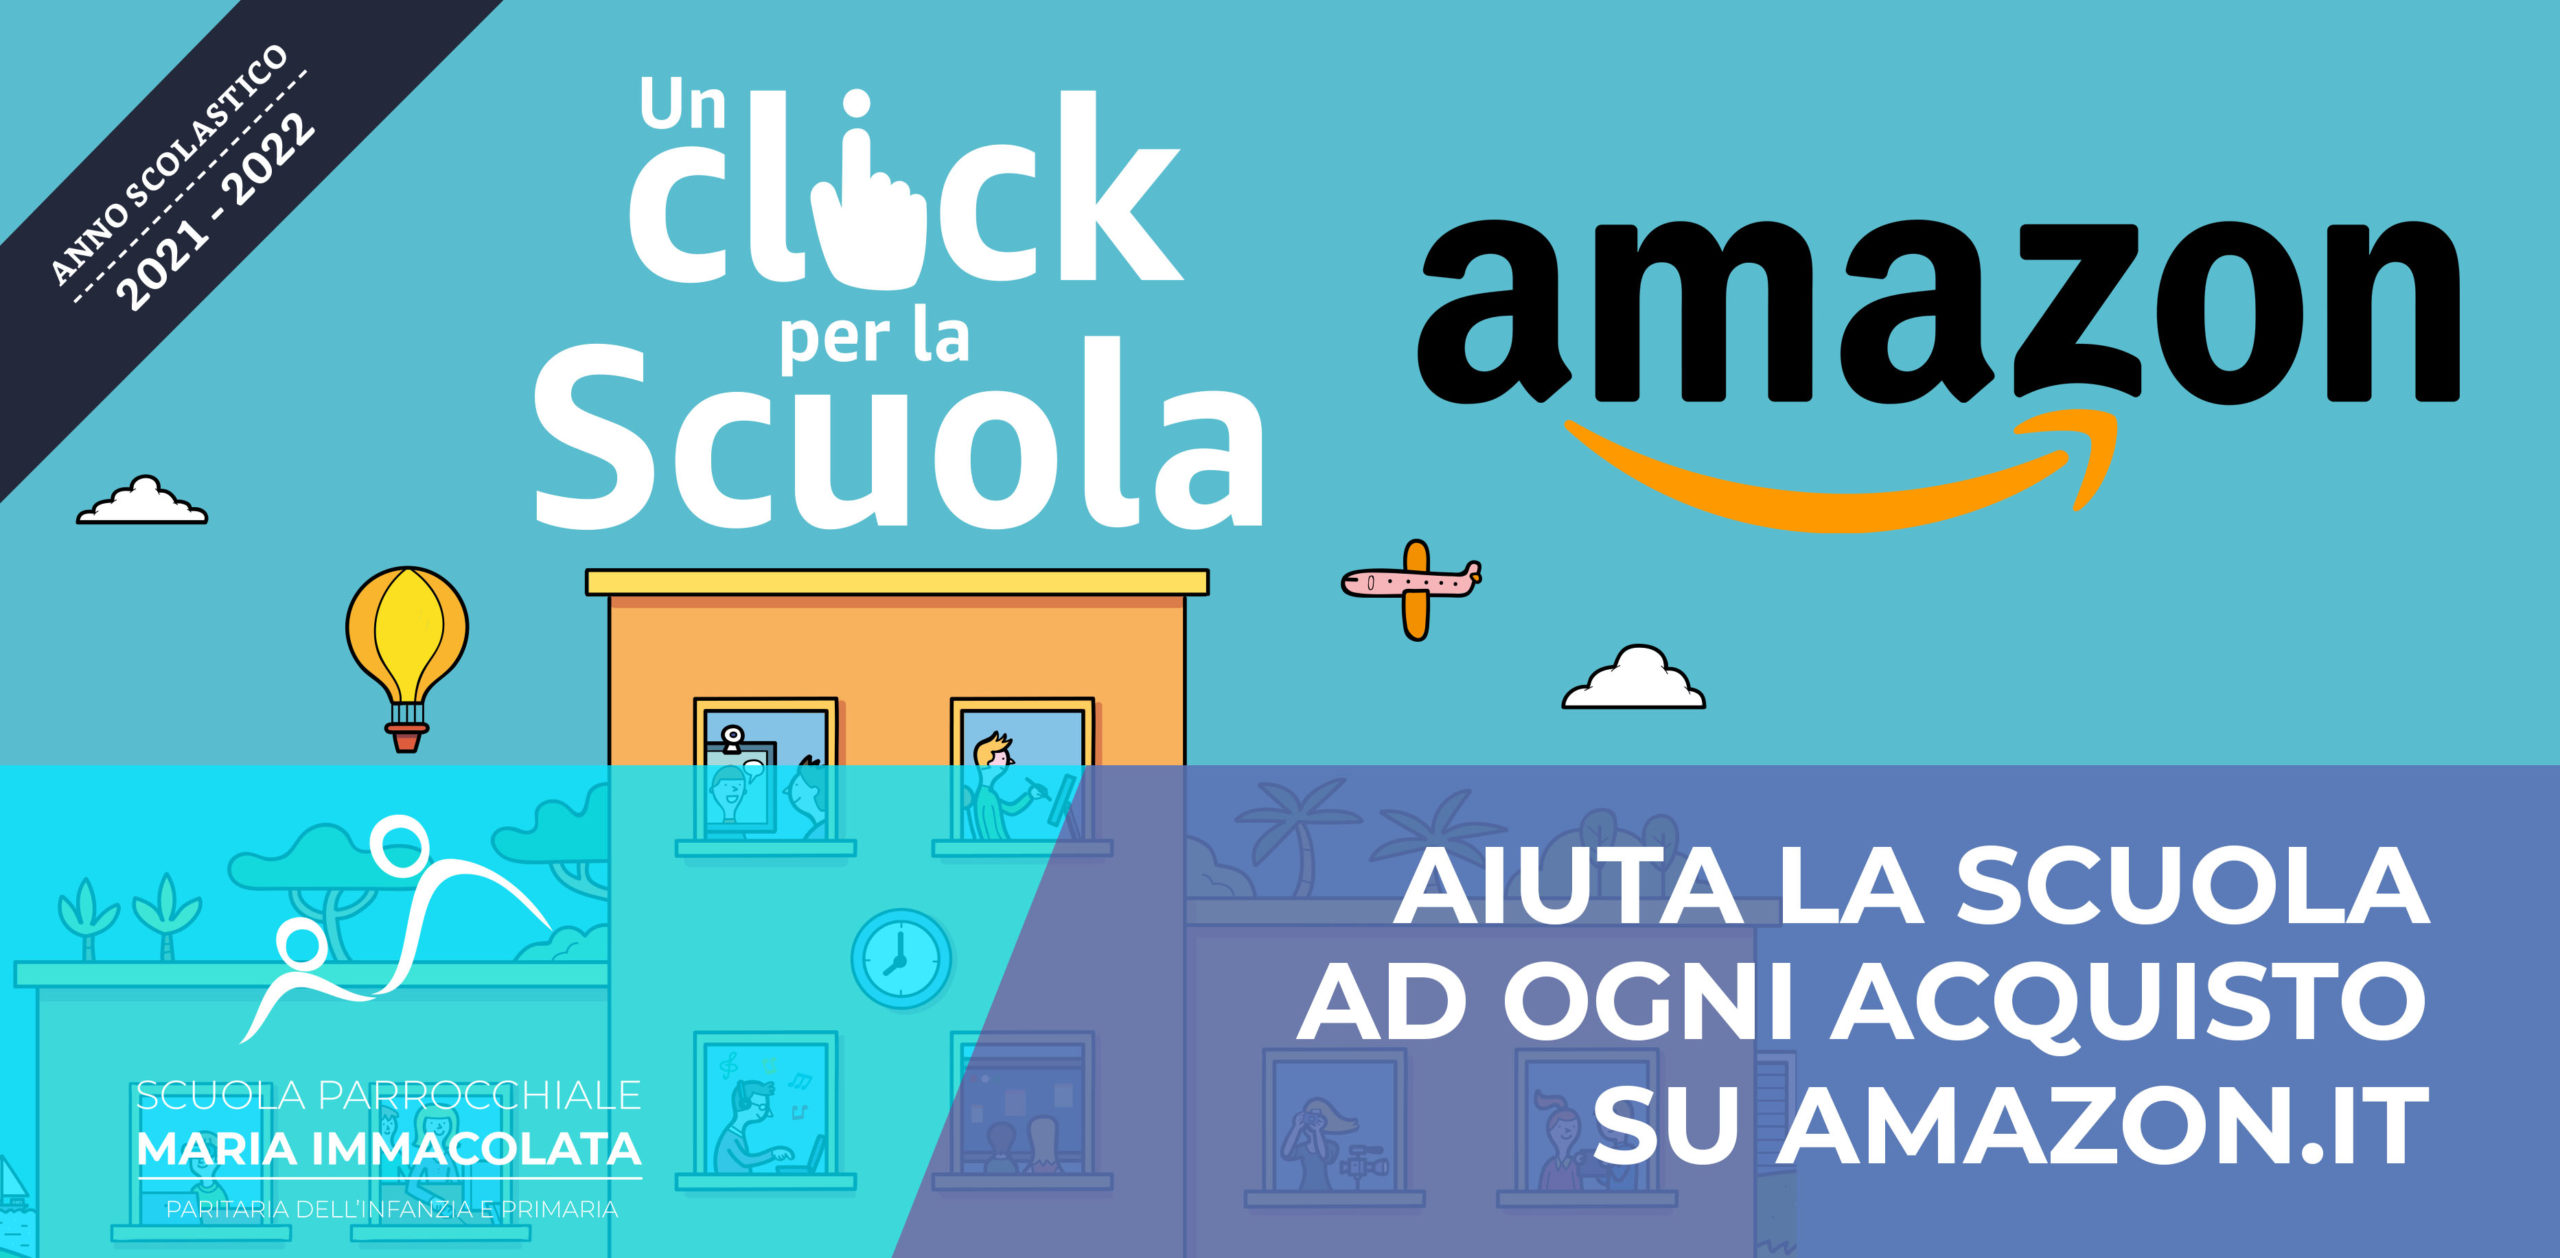 Riparte “Un click per la Scuola”: doni un credito ad ogni acquisto su Amazon.it